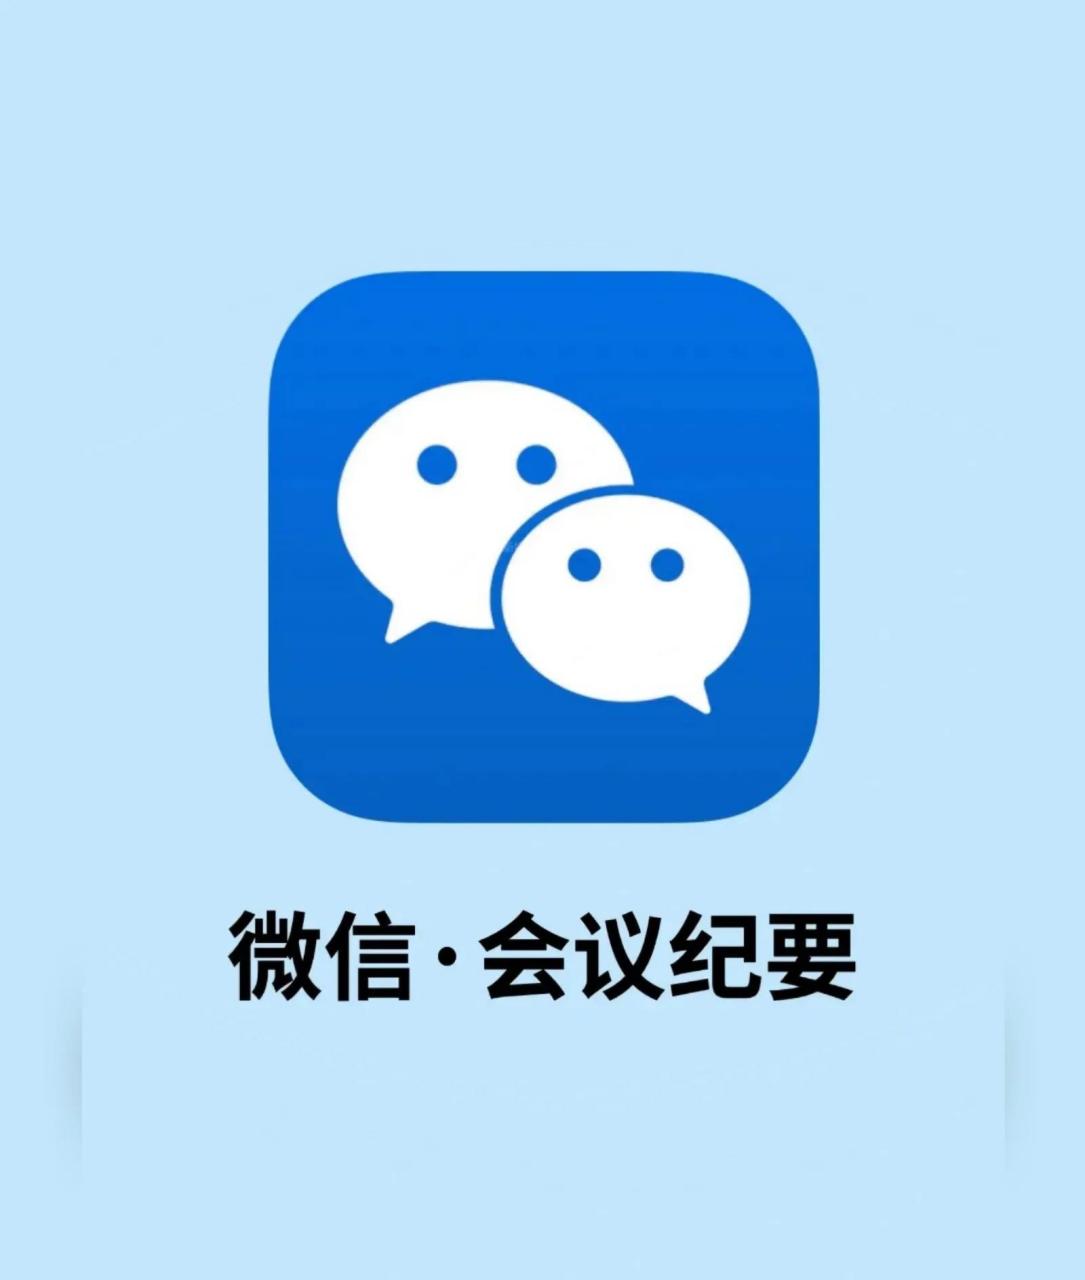 蓝色微信图标logo图片